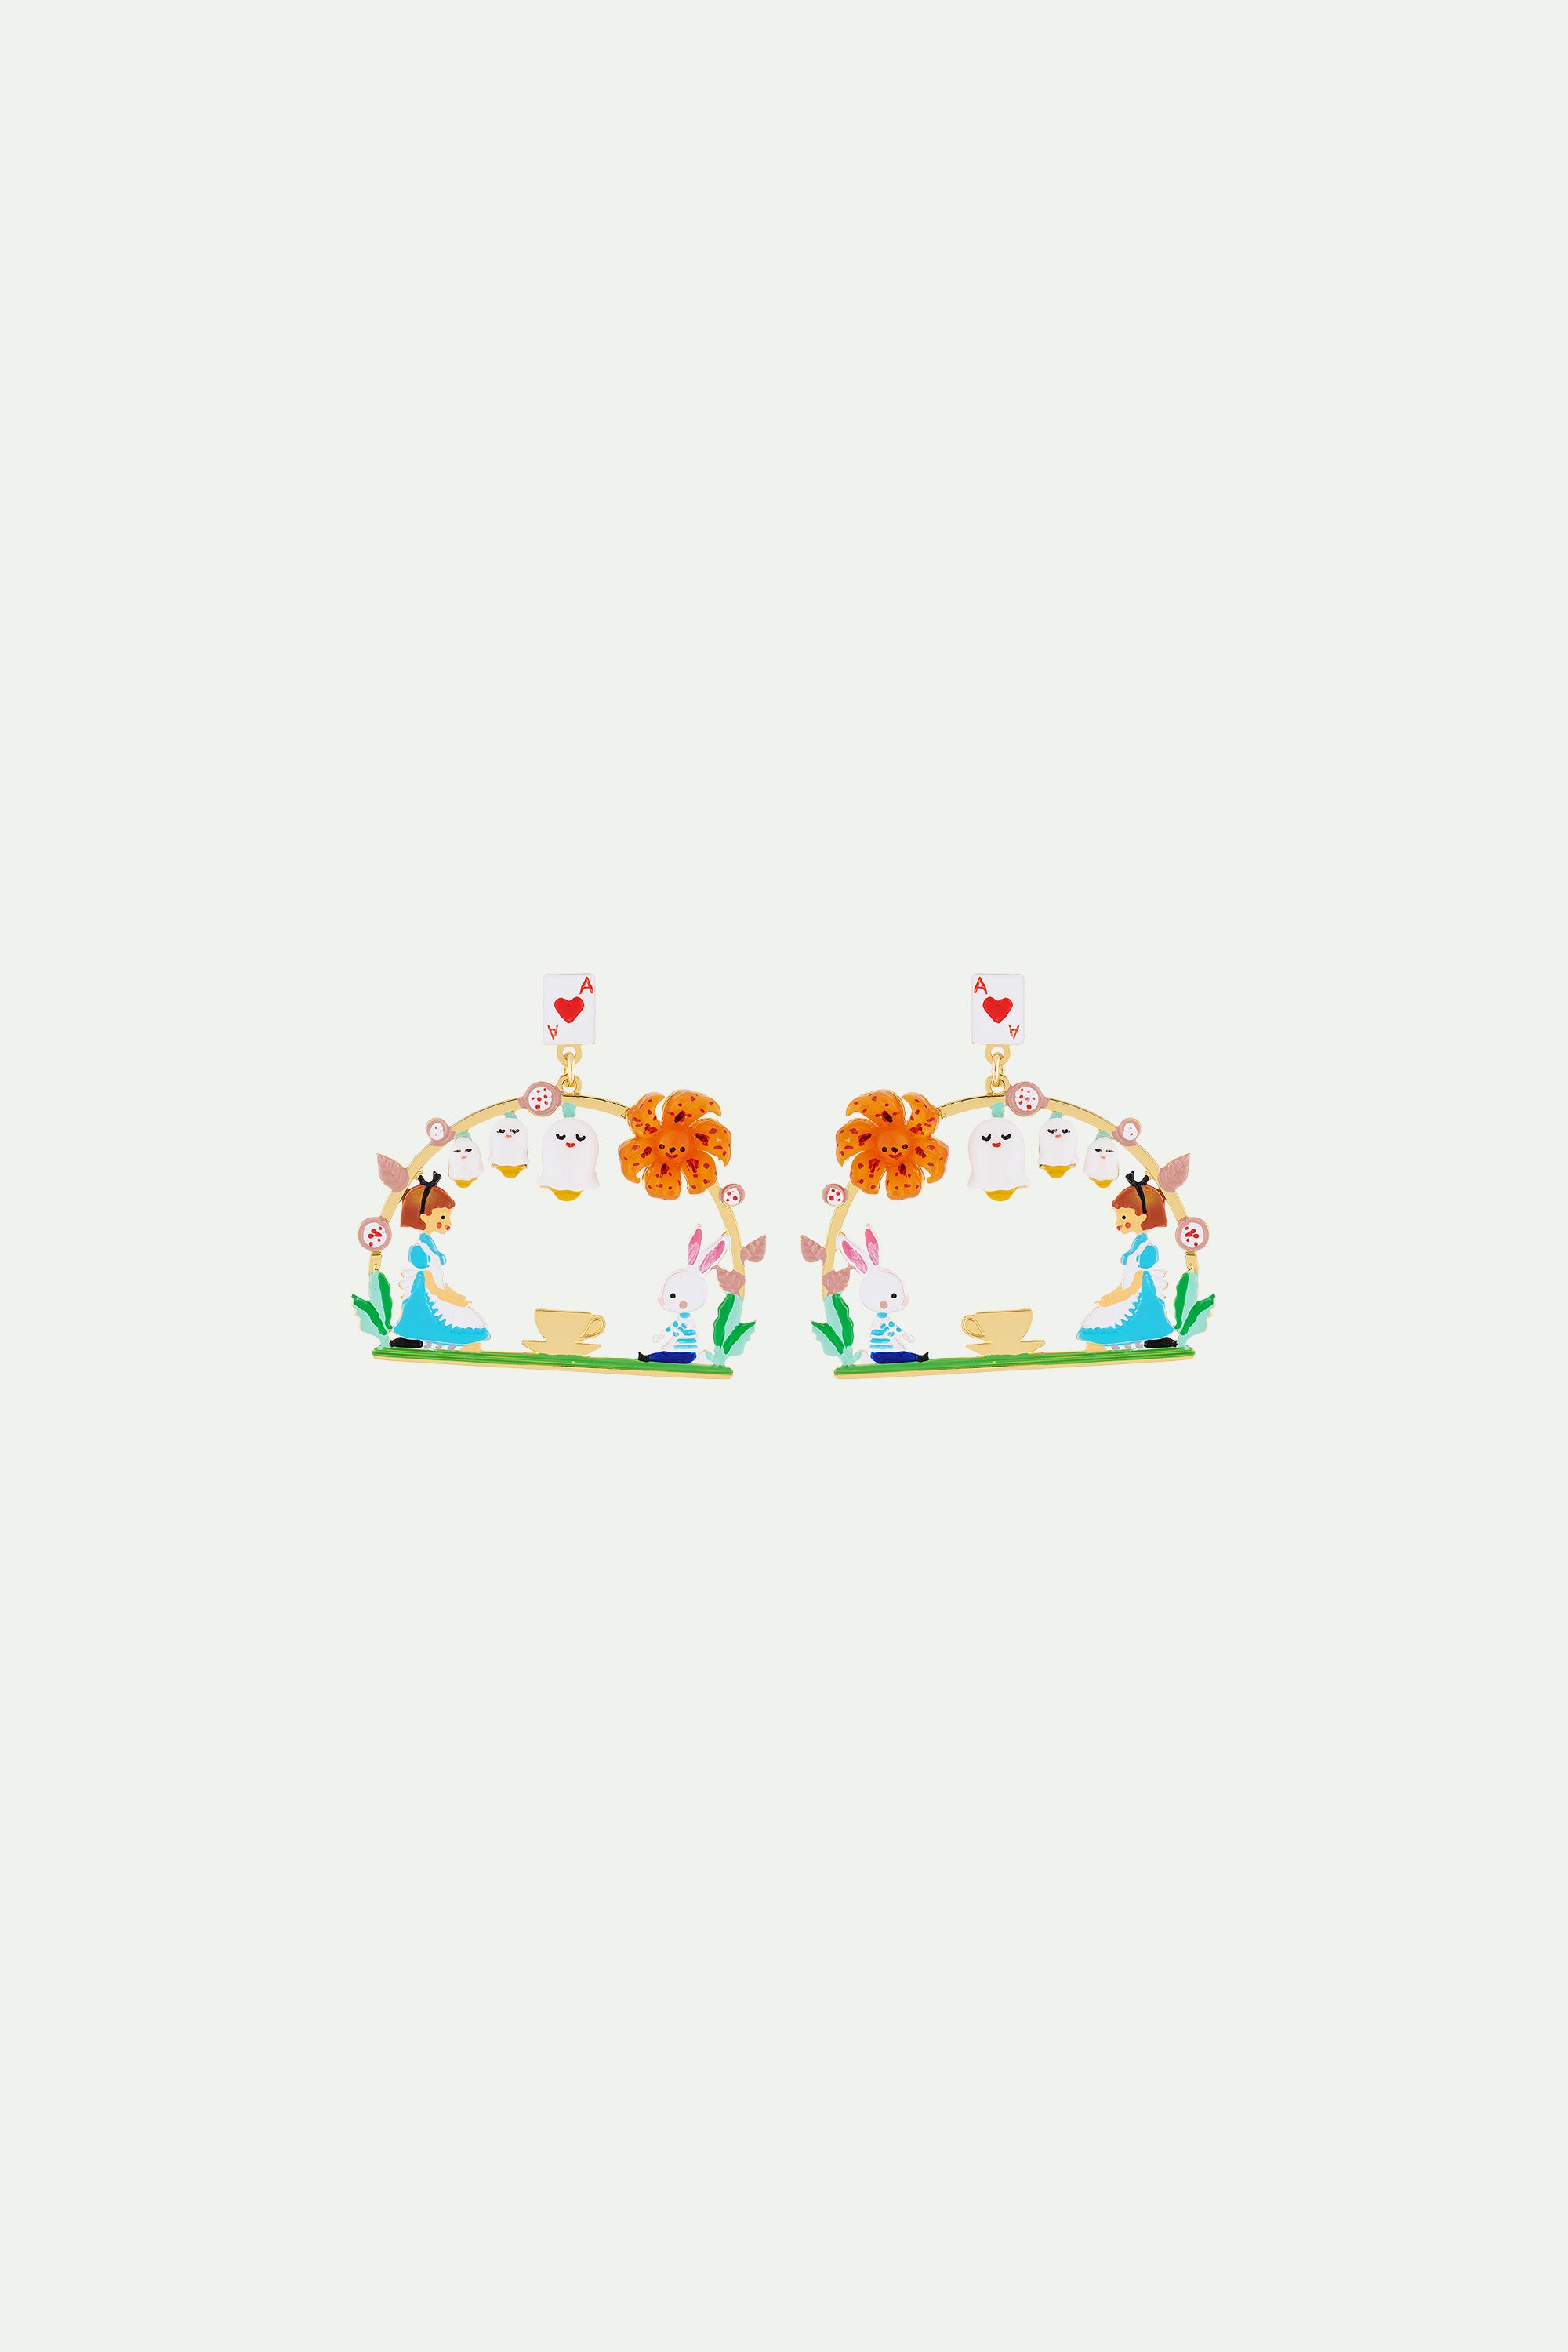 Créoles tiges teatime alice et lapin blanc